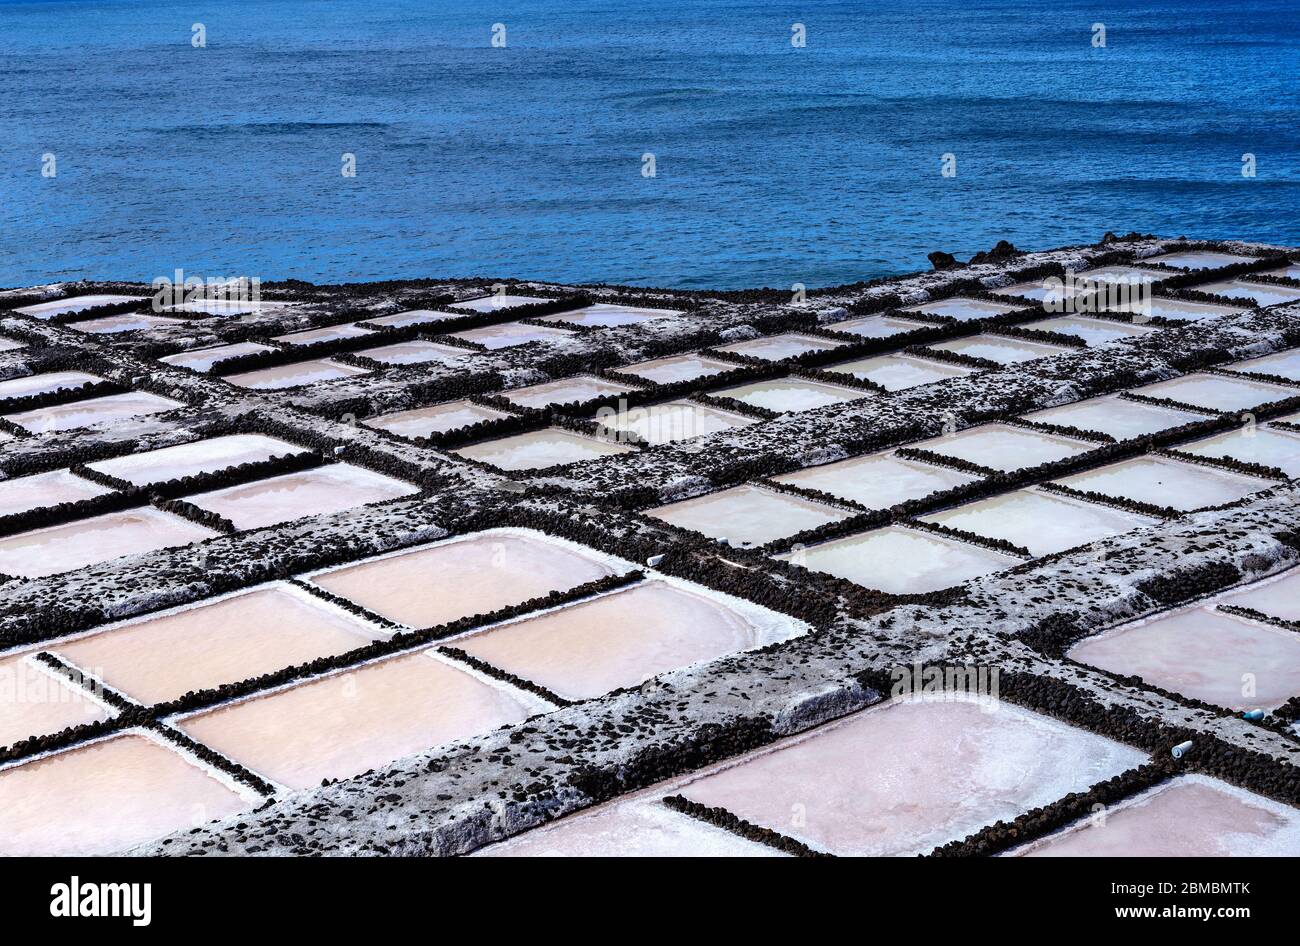 Salinas Marinas de Fuencaliente, La Palma, Canary Islands, Spain, Europe. Stock Photo